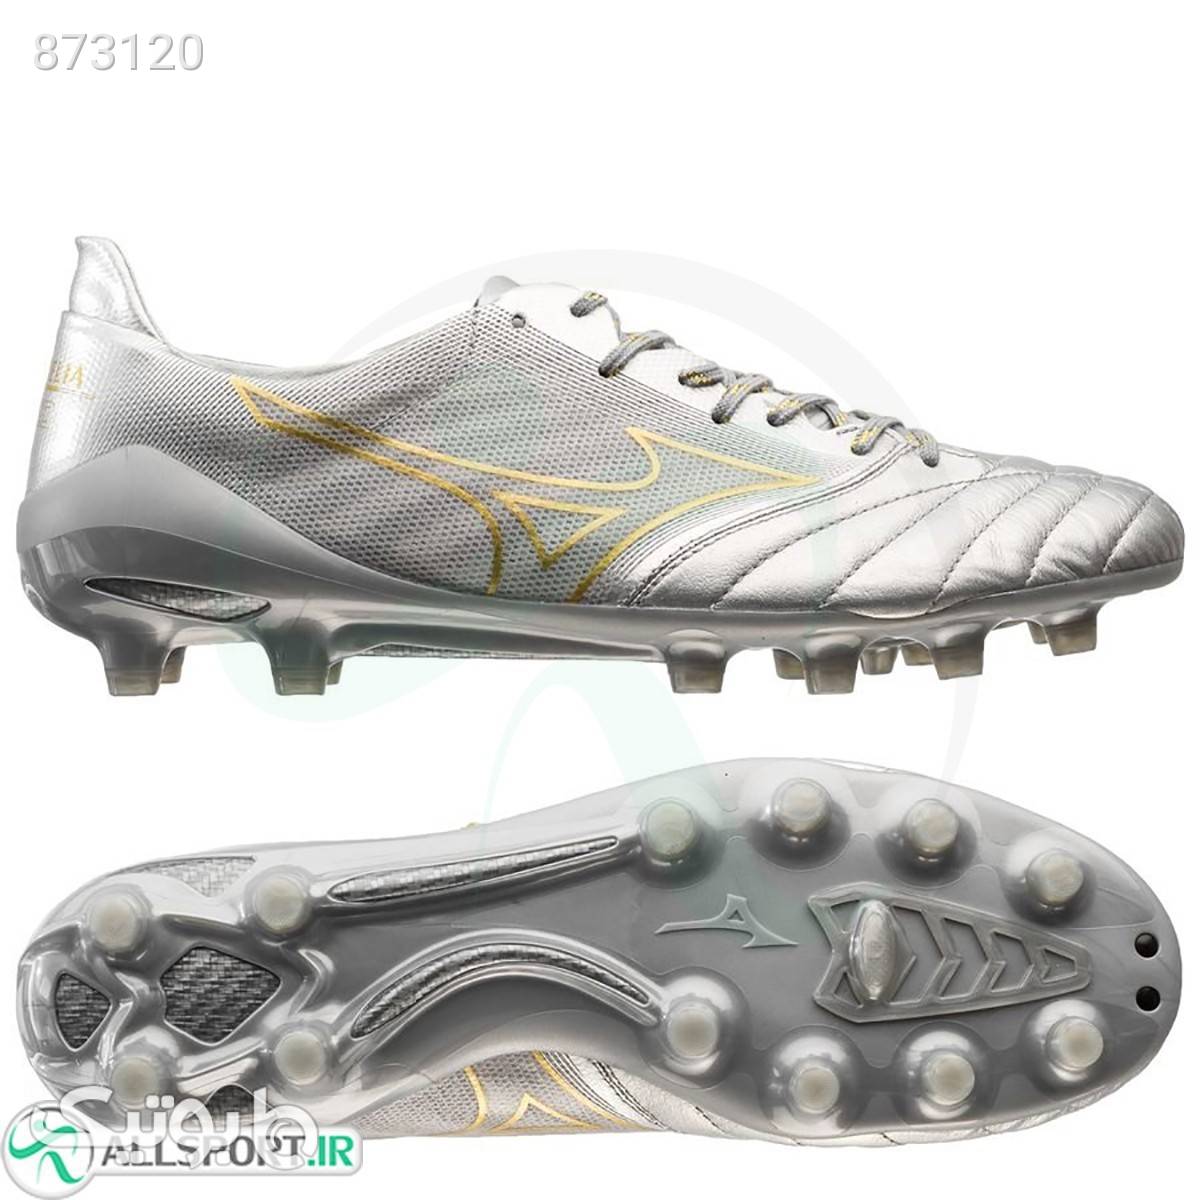 کفش فوتبال میزانو مورلیا طرح اصلی Mizuno Morelia Neo II Beta Silver Gold